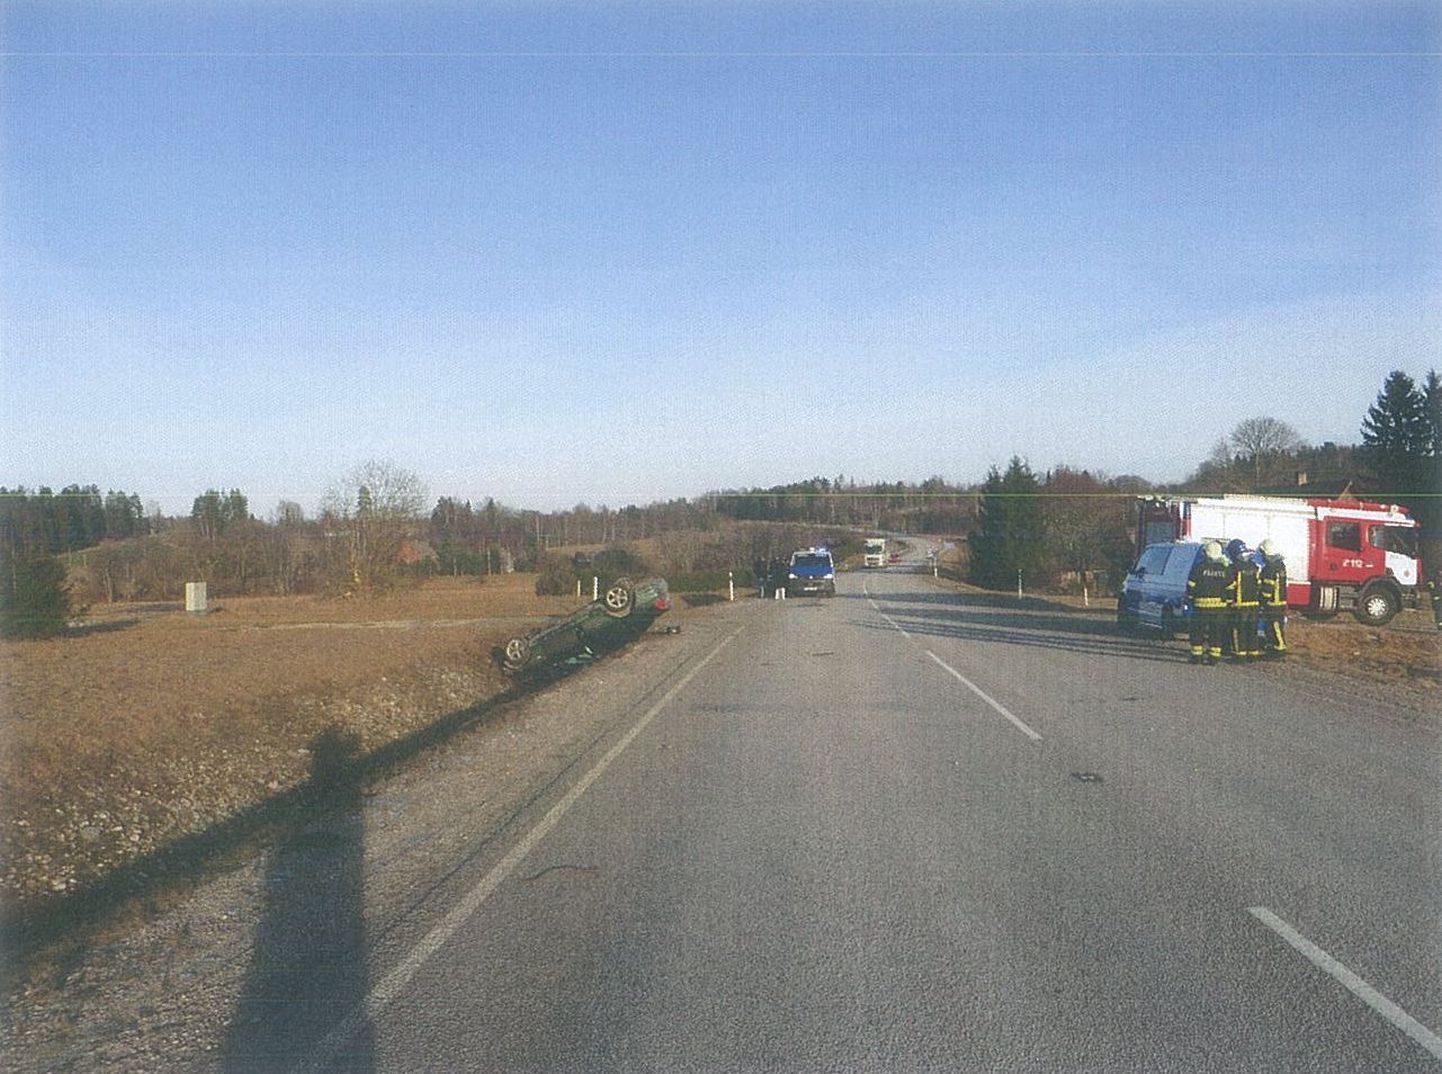 Liiklusõnnetus Puka vallas 25. jaanuaril